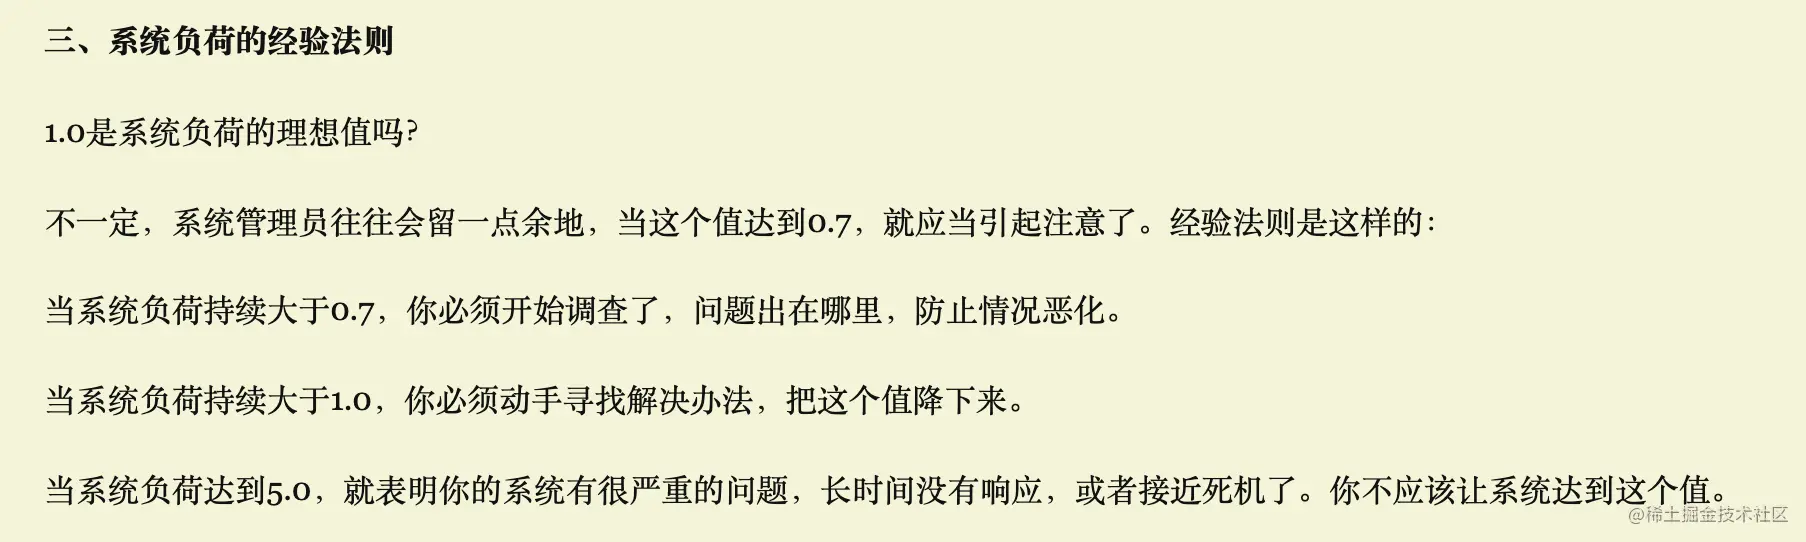  From teacher Ruan Yifeng's blog 